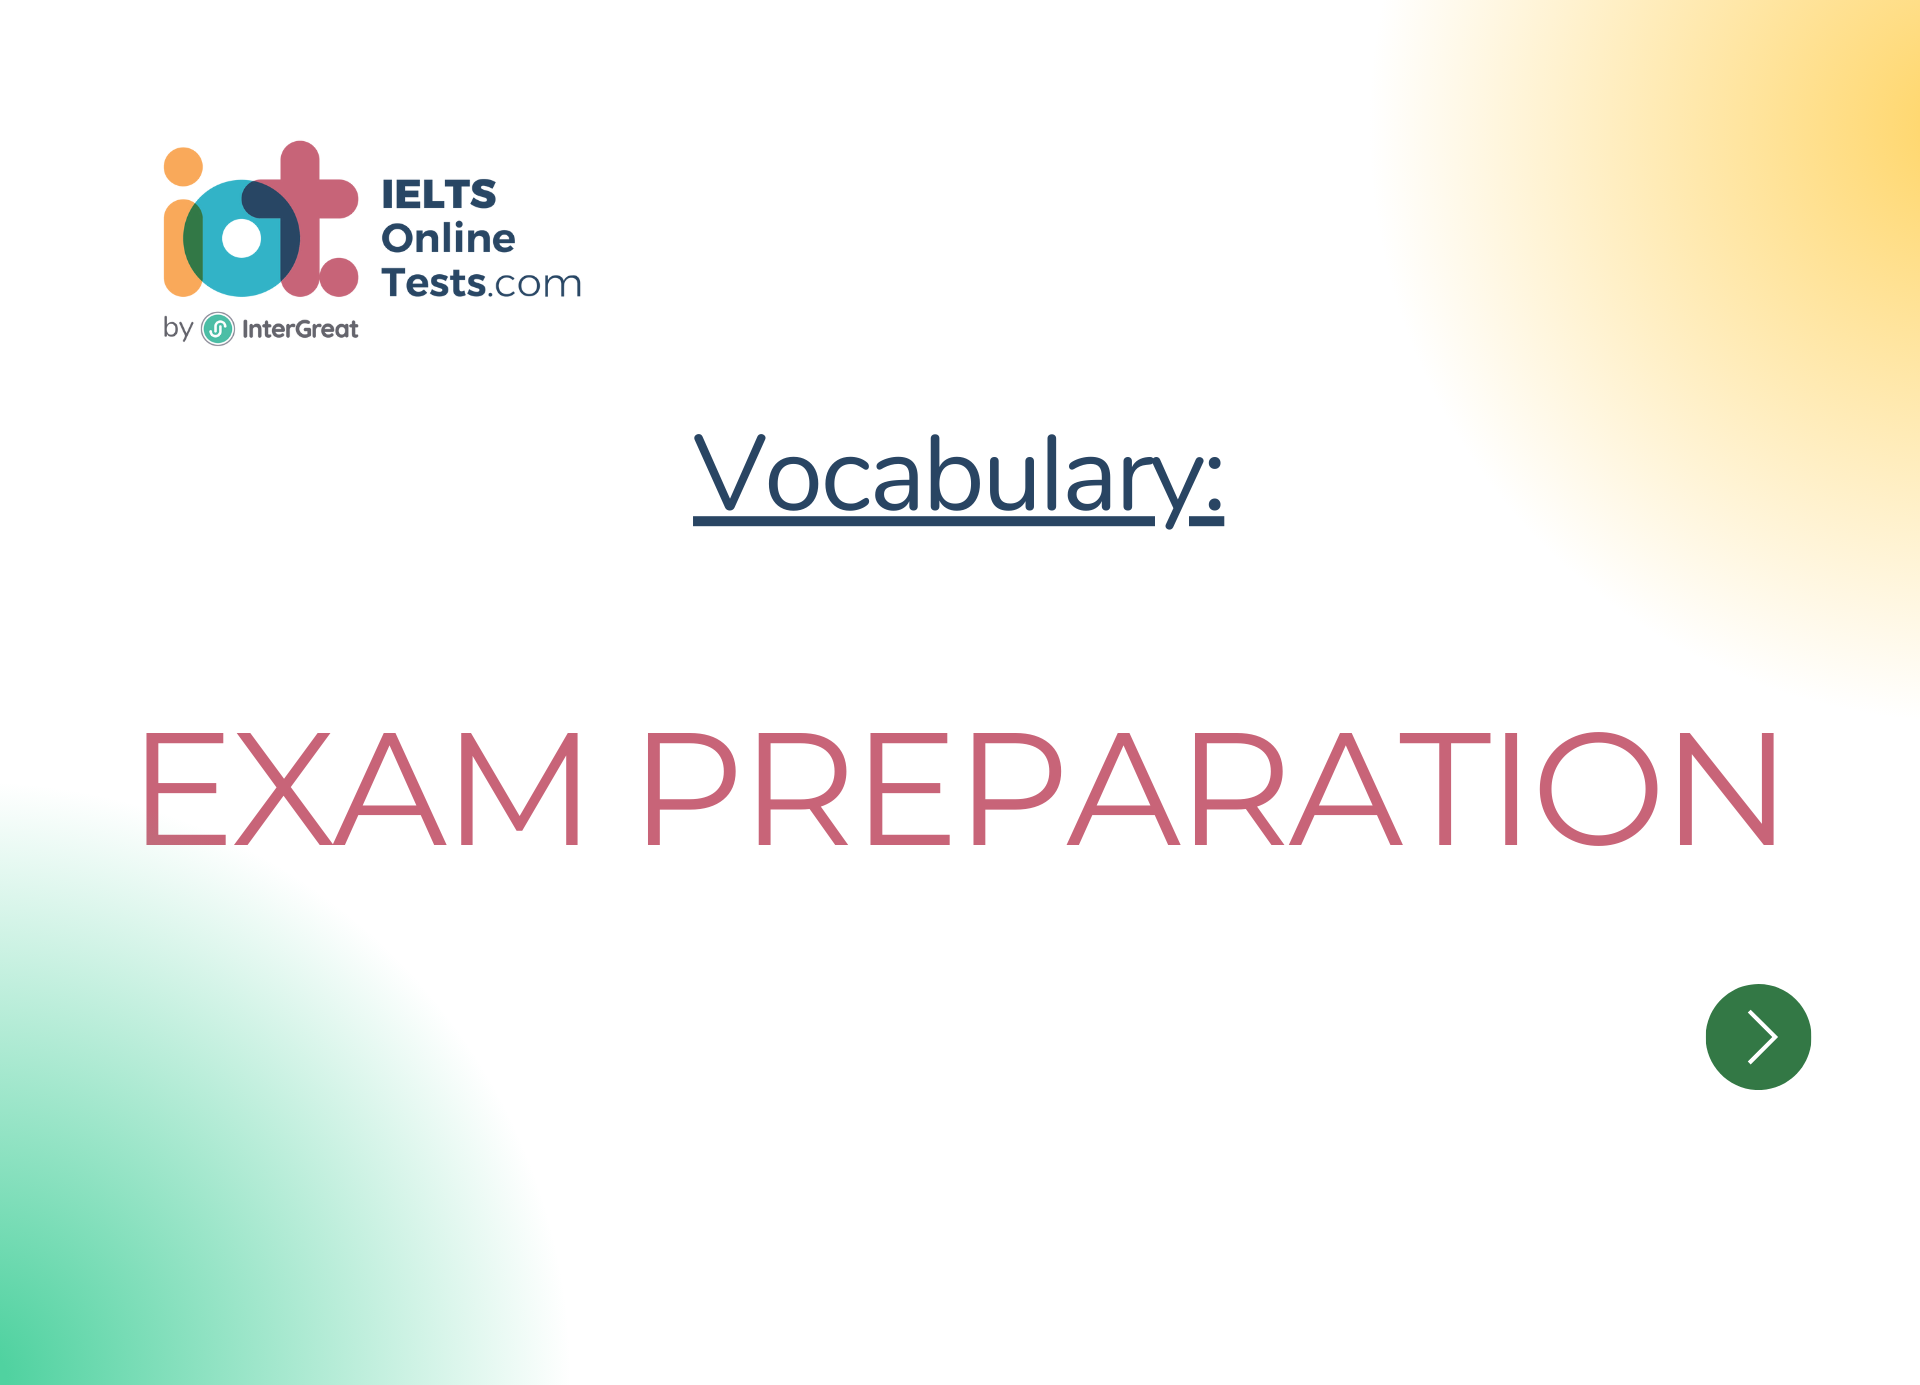 Chuẩn bị cho kỳ thi (Exam preparation)